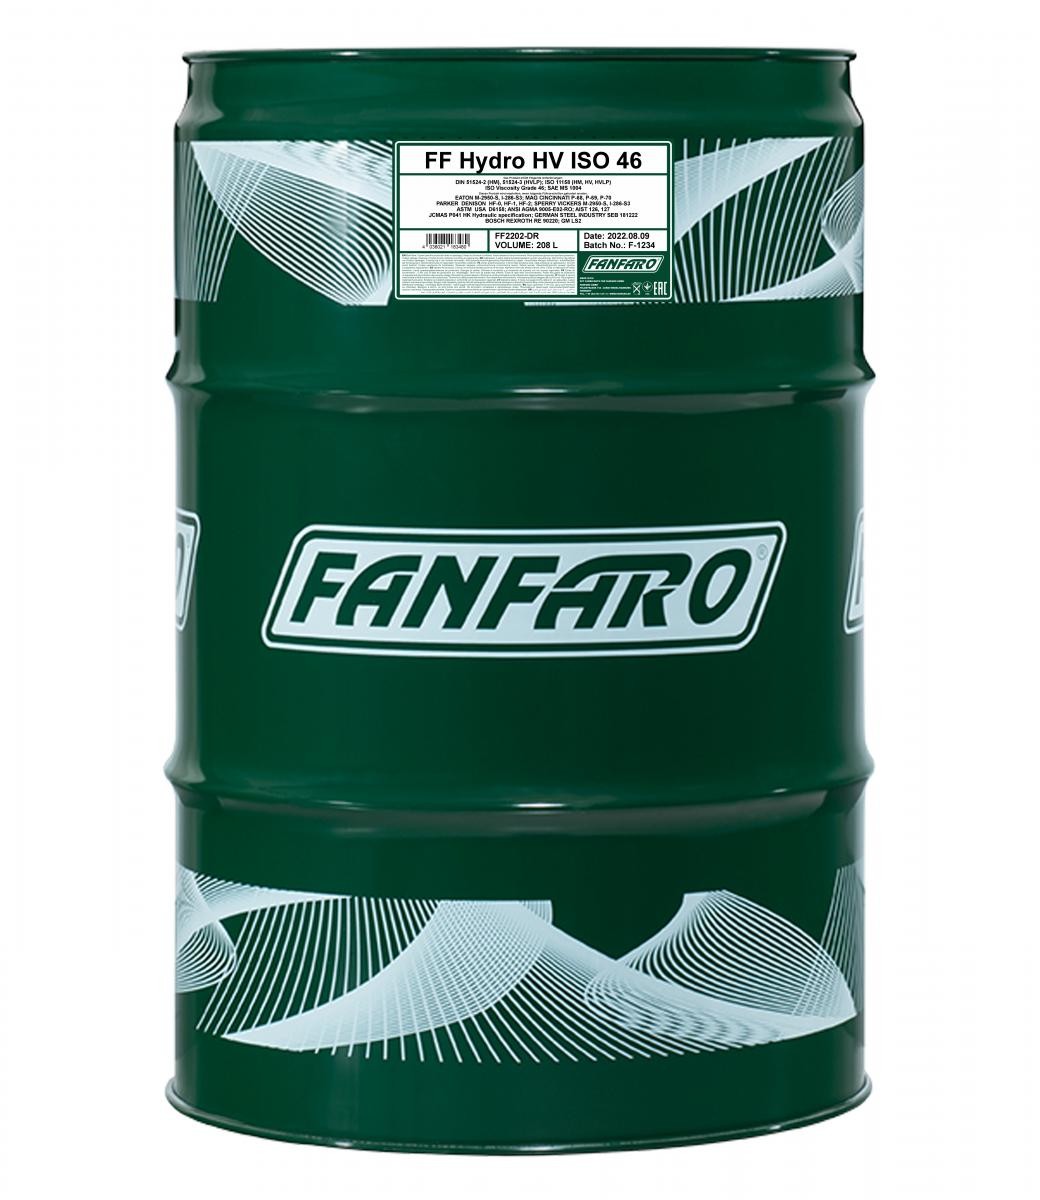 FF2202-DR FANFARO Hydrauliköl billiger online kaufen